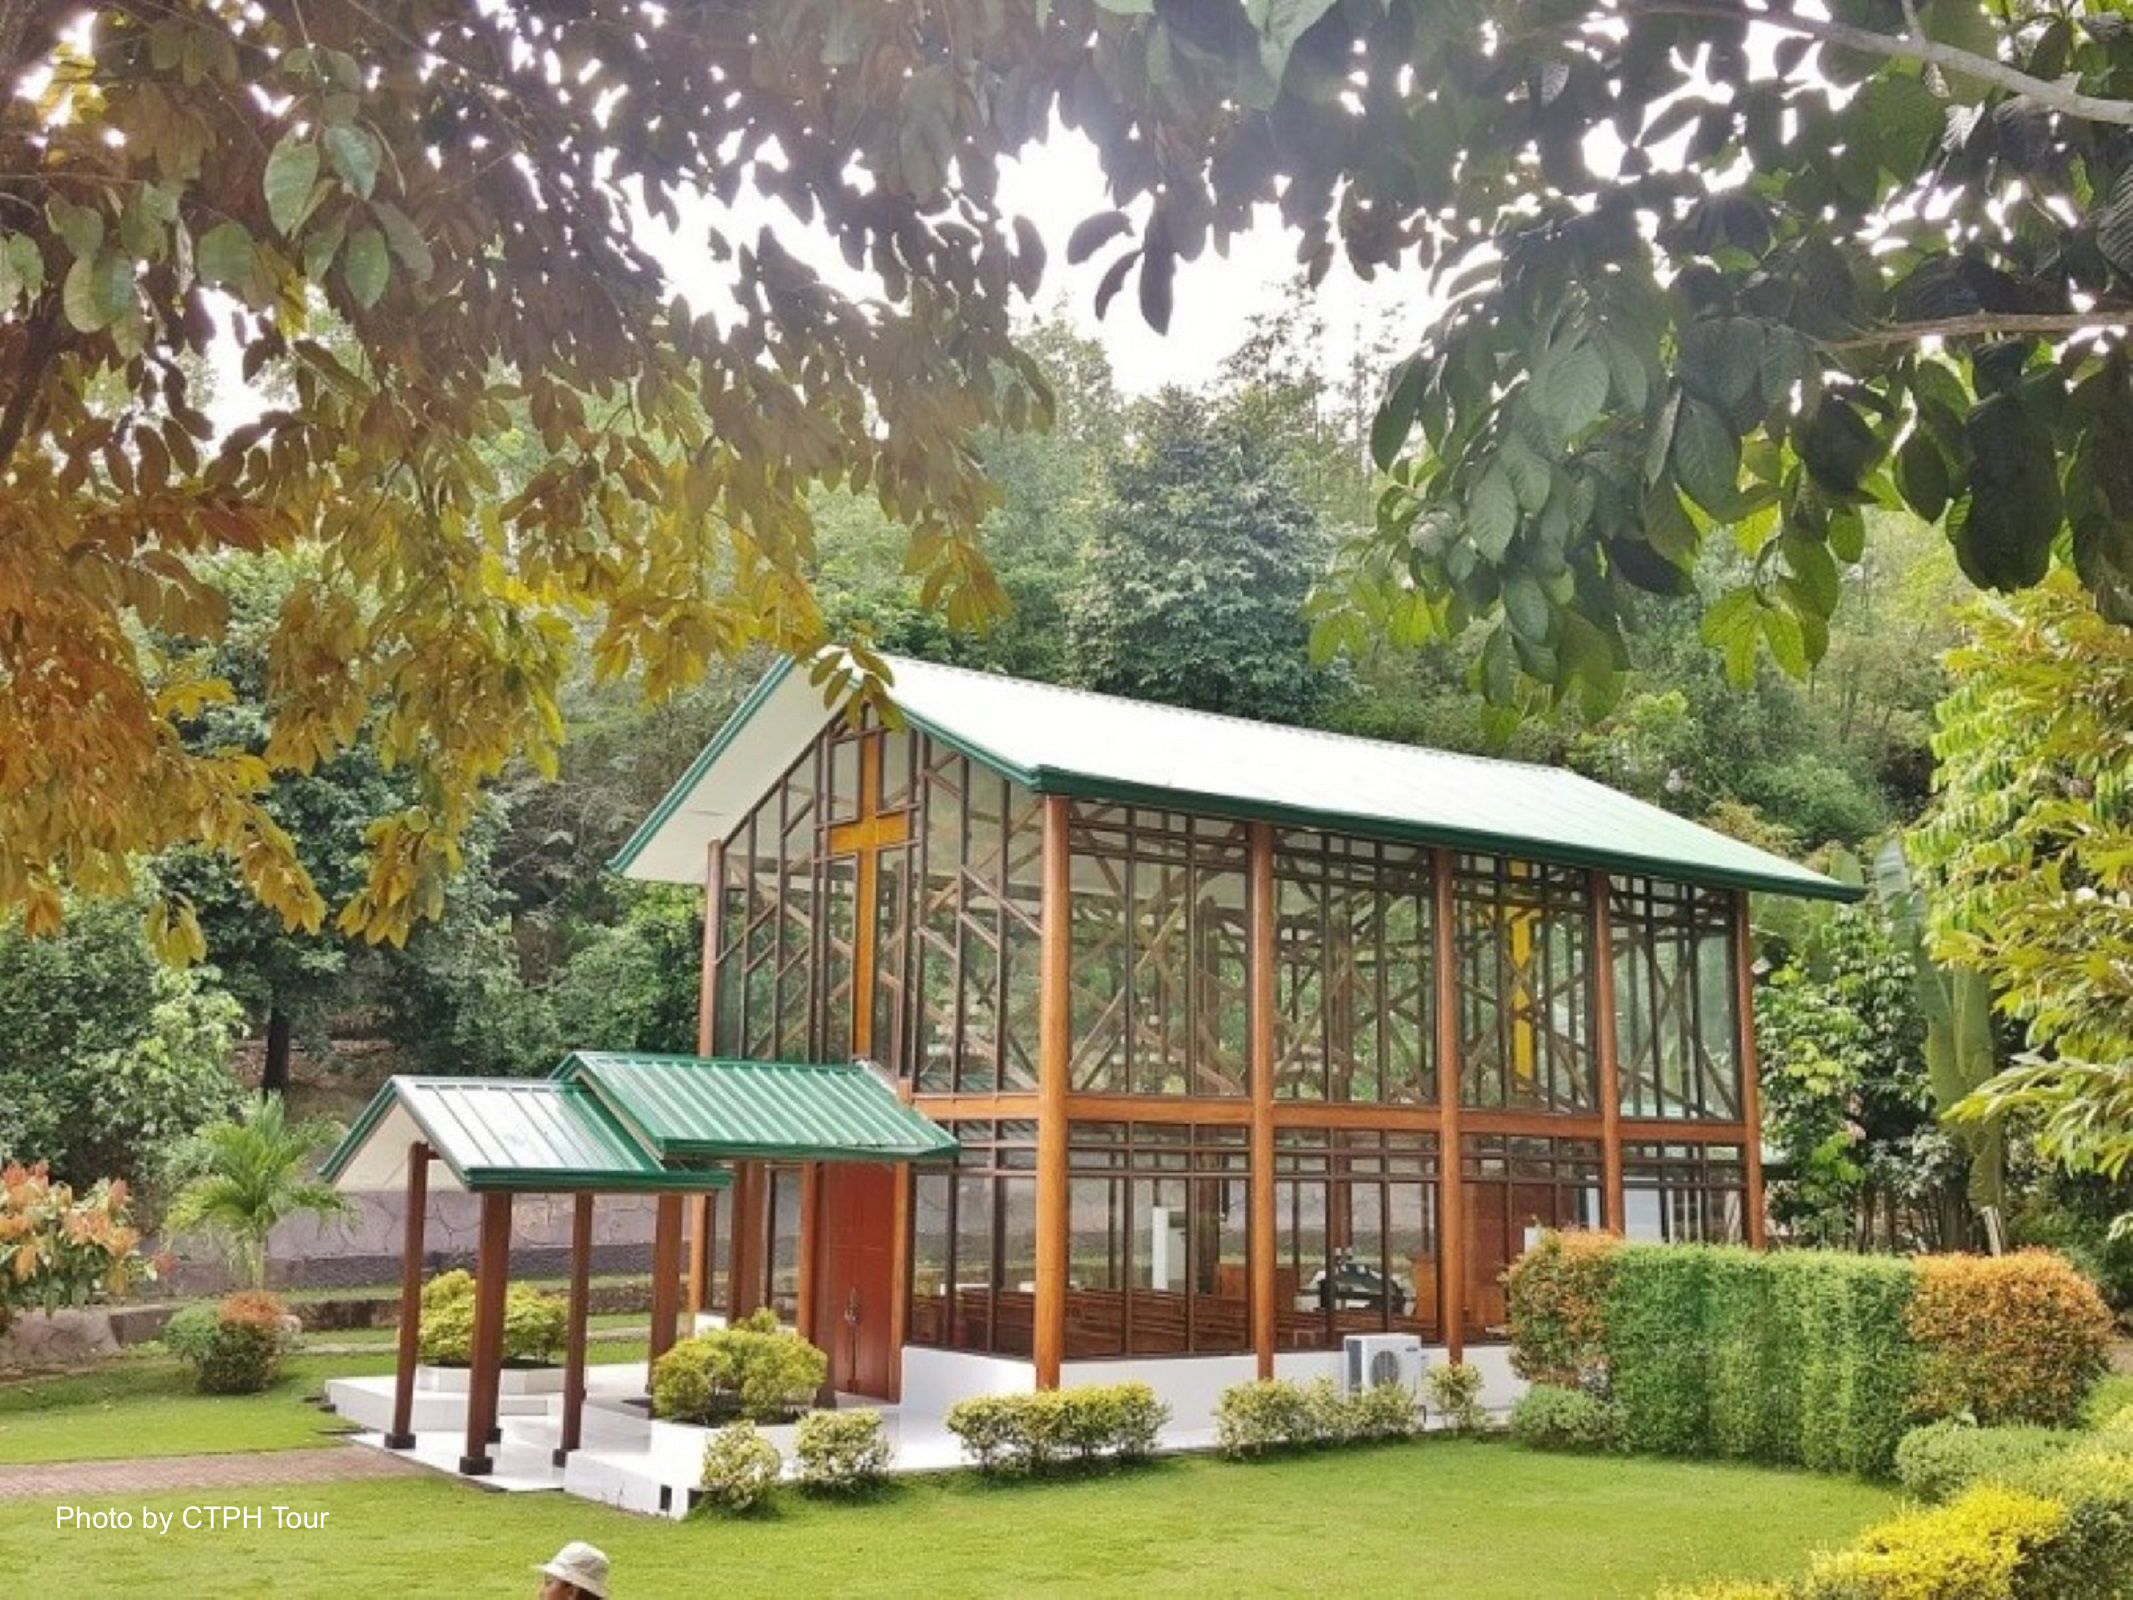 Ephrathah Farms in Iloilo